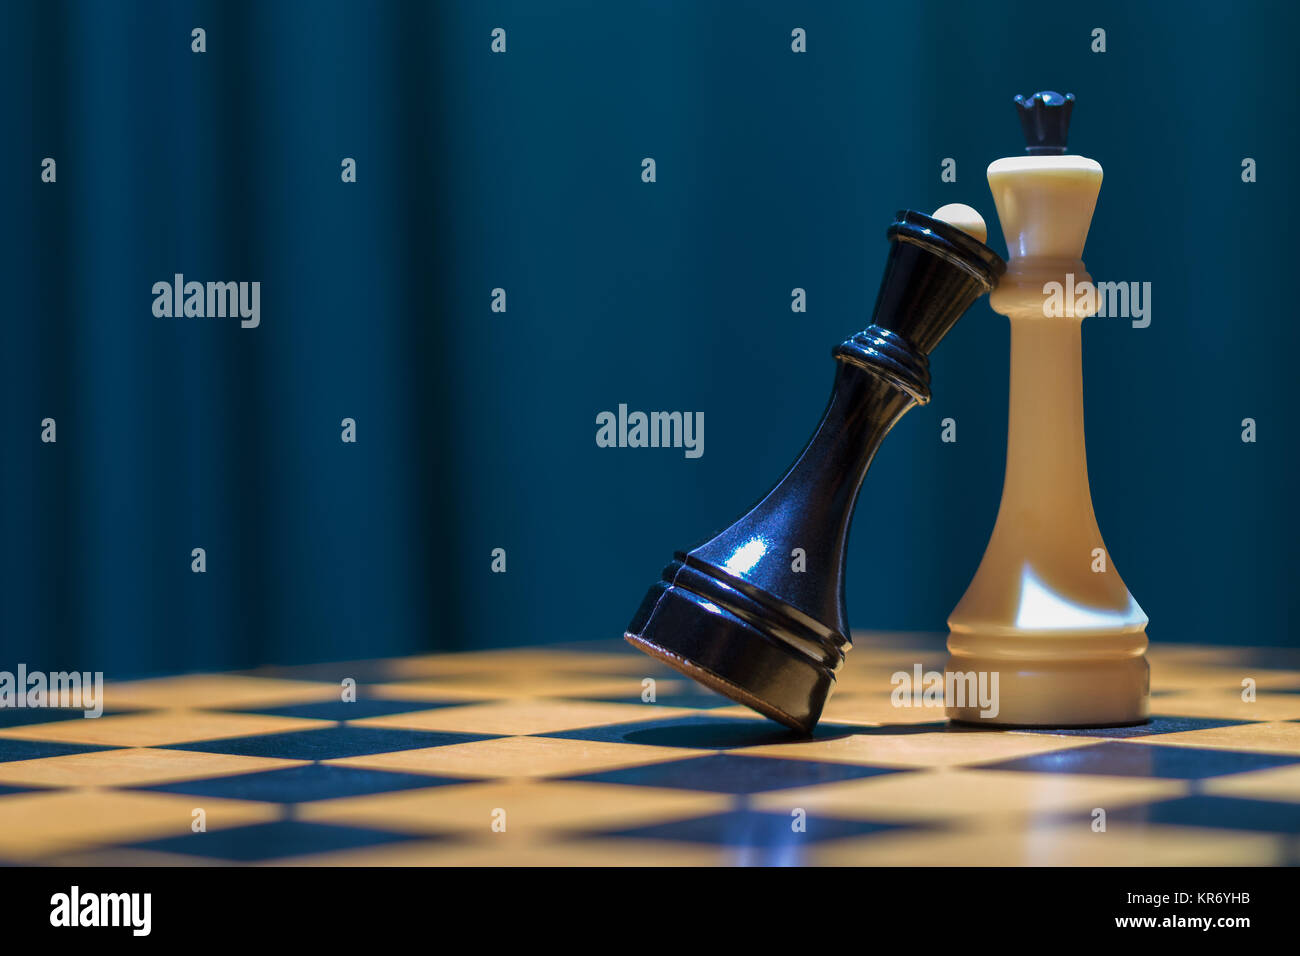 Noir et blanc d'échecs reine roi debout sur un échiquier en bois. La reine noire mit sa tête sur la poitrine pour le roi blanc. Banque D'Images